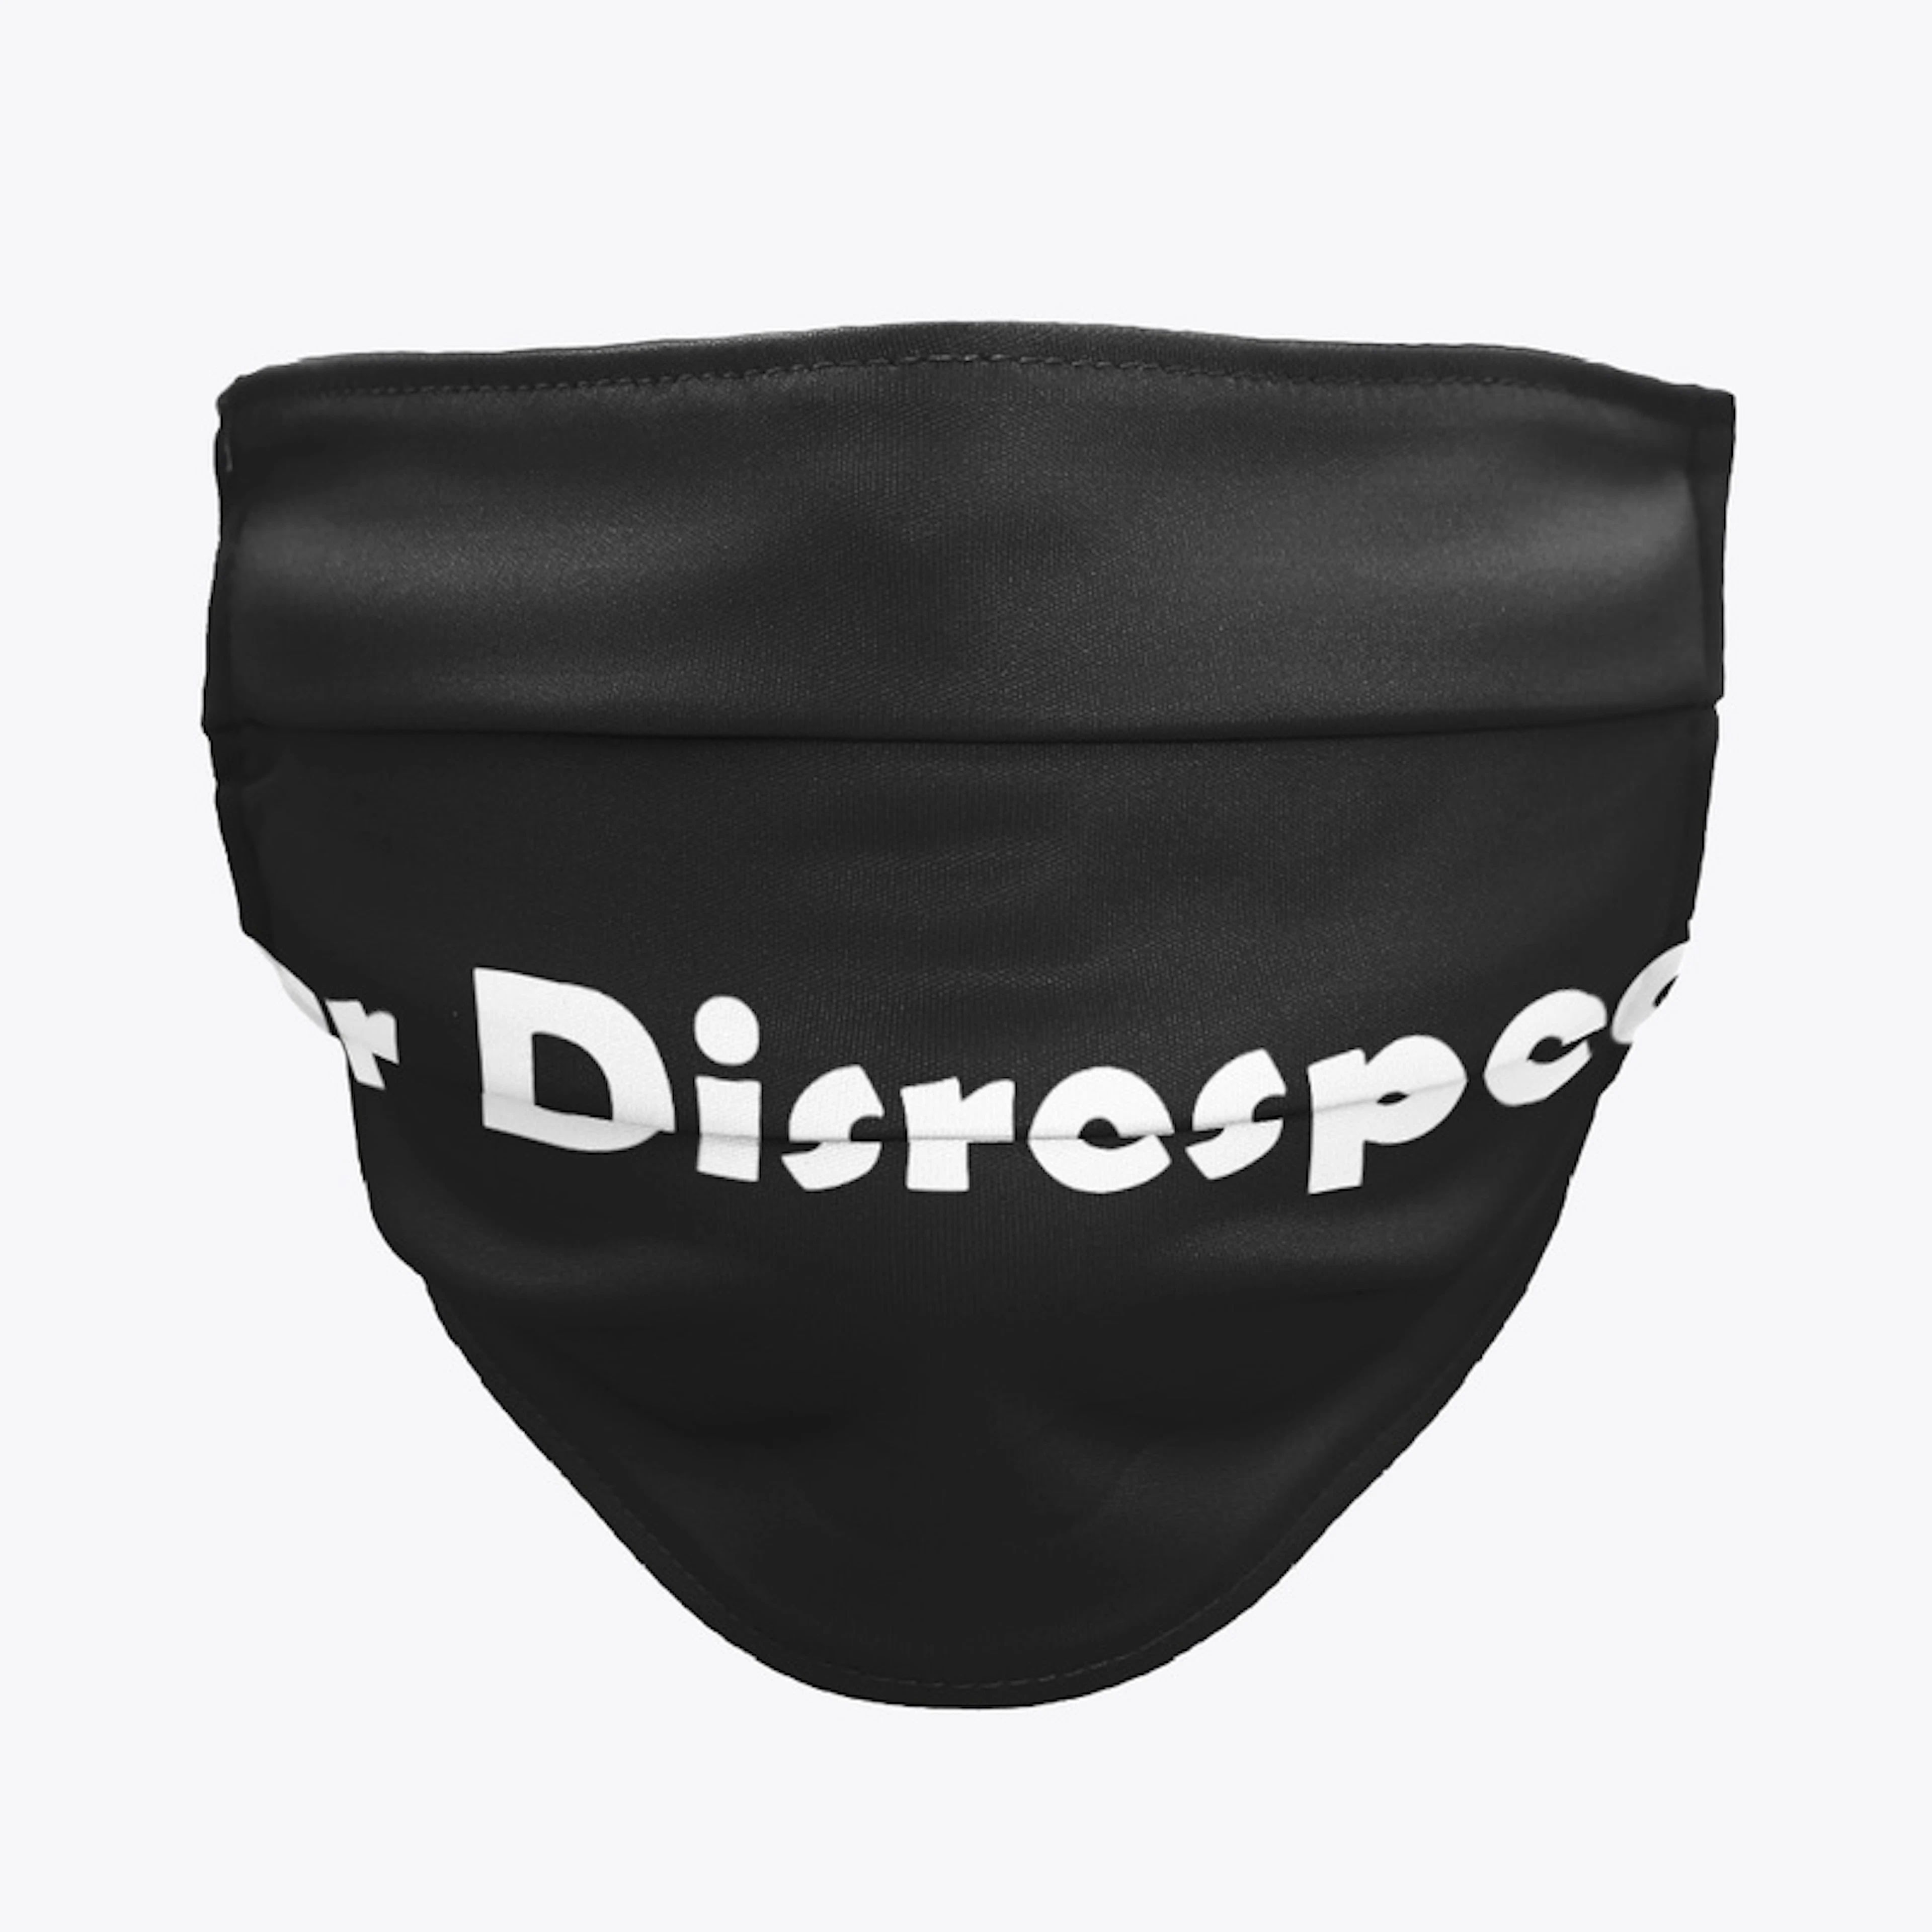 Dr Disrespect Merch Logo